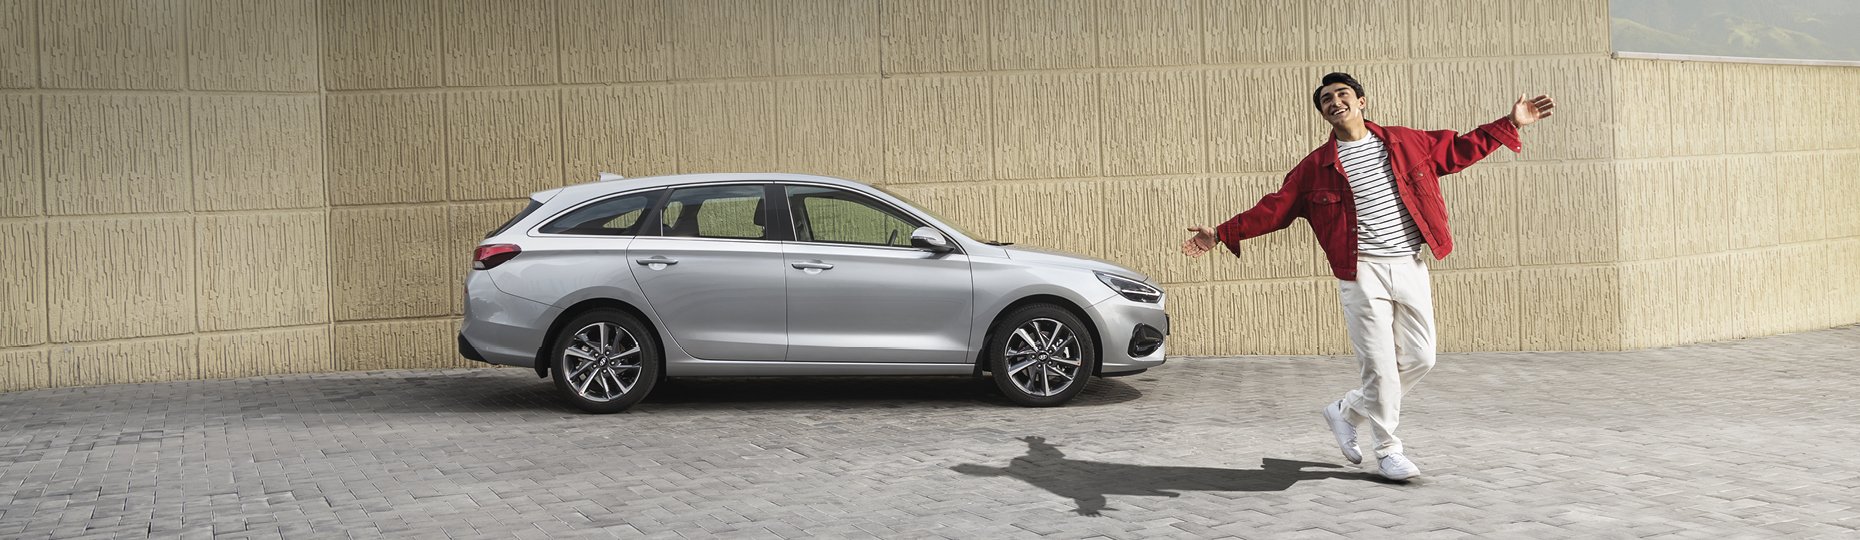 Купить новый Hyundai i30 у официального дилера в Караганде